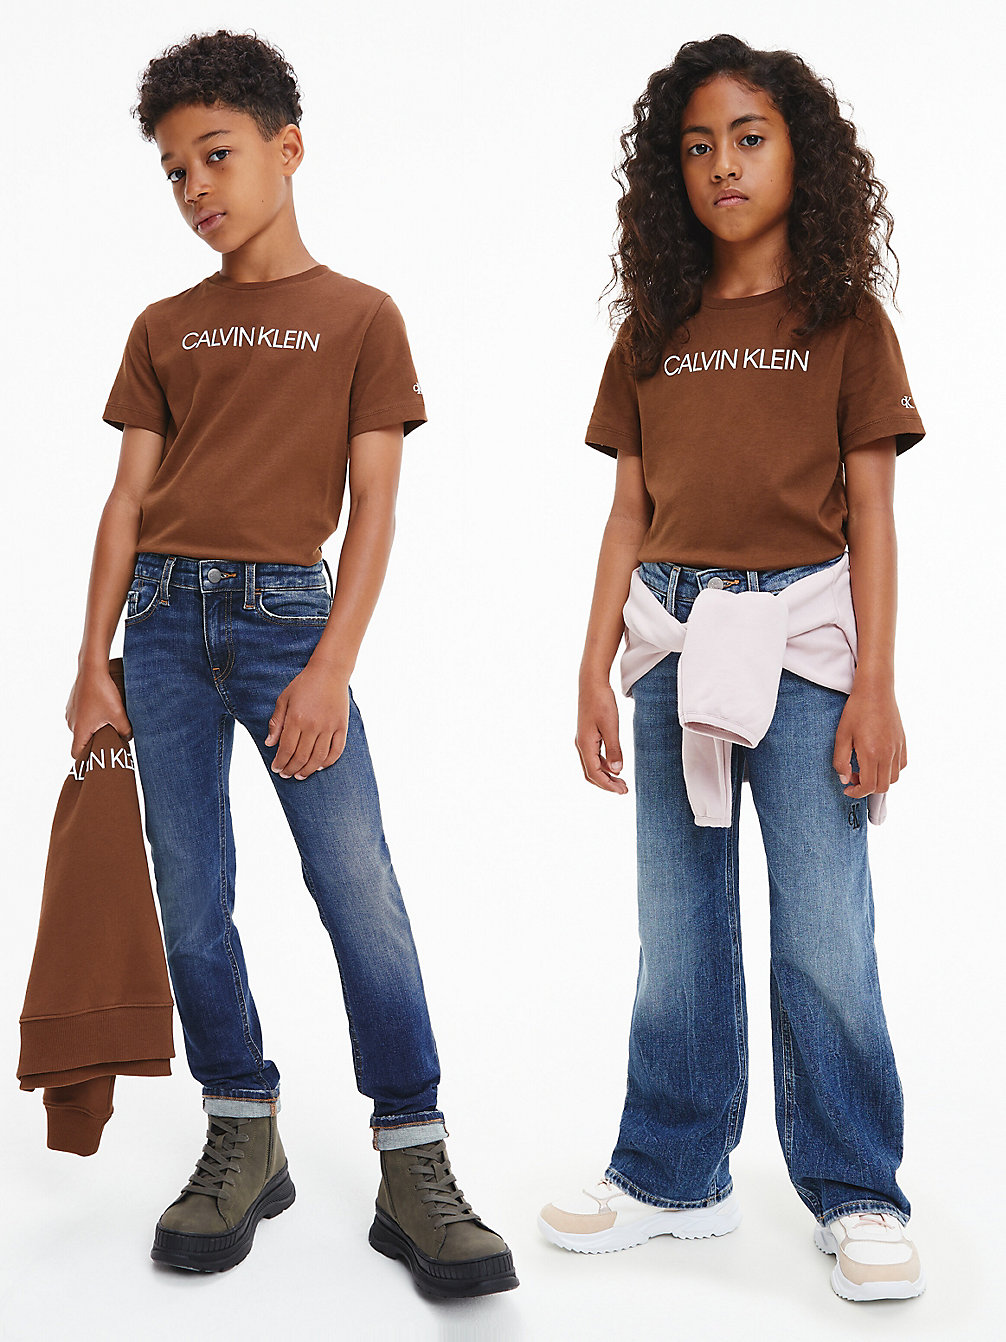 MILK CHOCOLATE > Unisex T-Shirt Van Biologisch Katoen Met Logo > undefined kids unisex - Calvin Klein